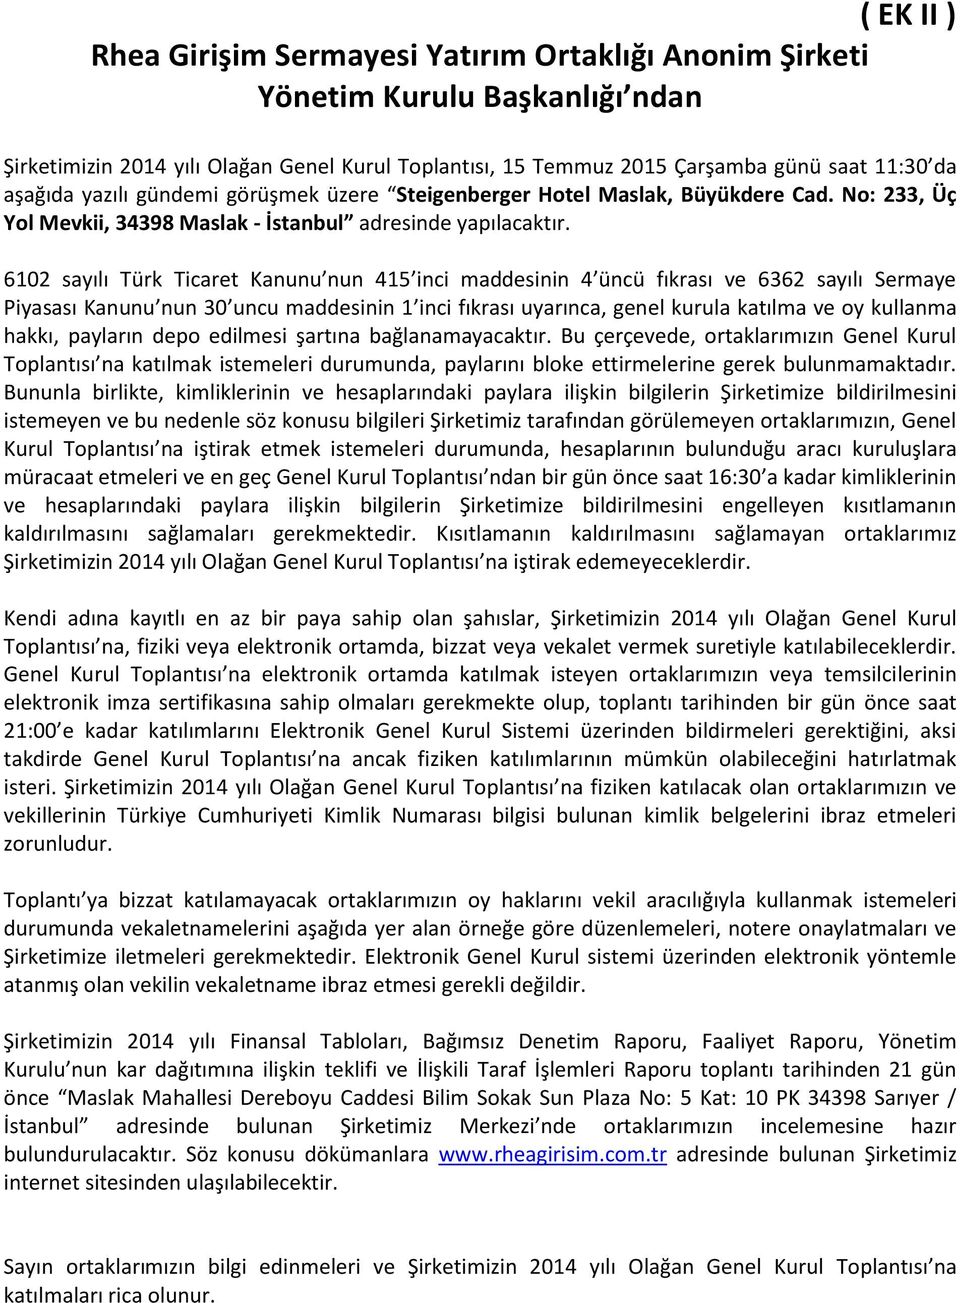 6102 sayılı Türk Ticaret Kanunu nun 415 inci maddesinin 4 üncü fıkrası ve 6362 sayılı Sermaye Piyasası Kanunu nun 30 uncu maddesinin 1 inci fıkrası uyarınca, genel kurula katılma ve oy kullanma